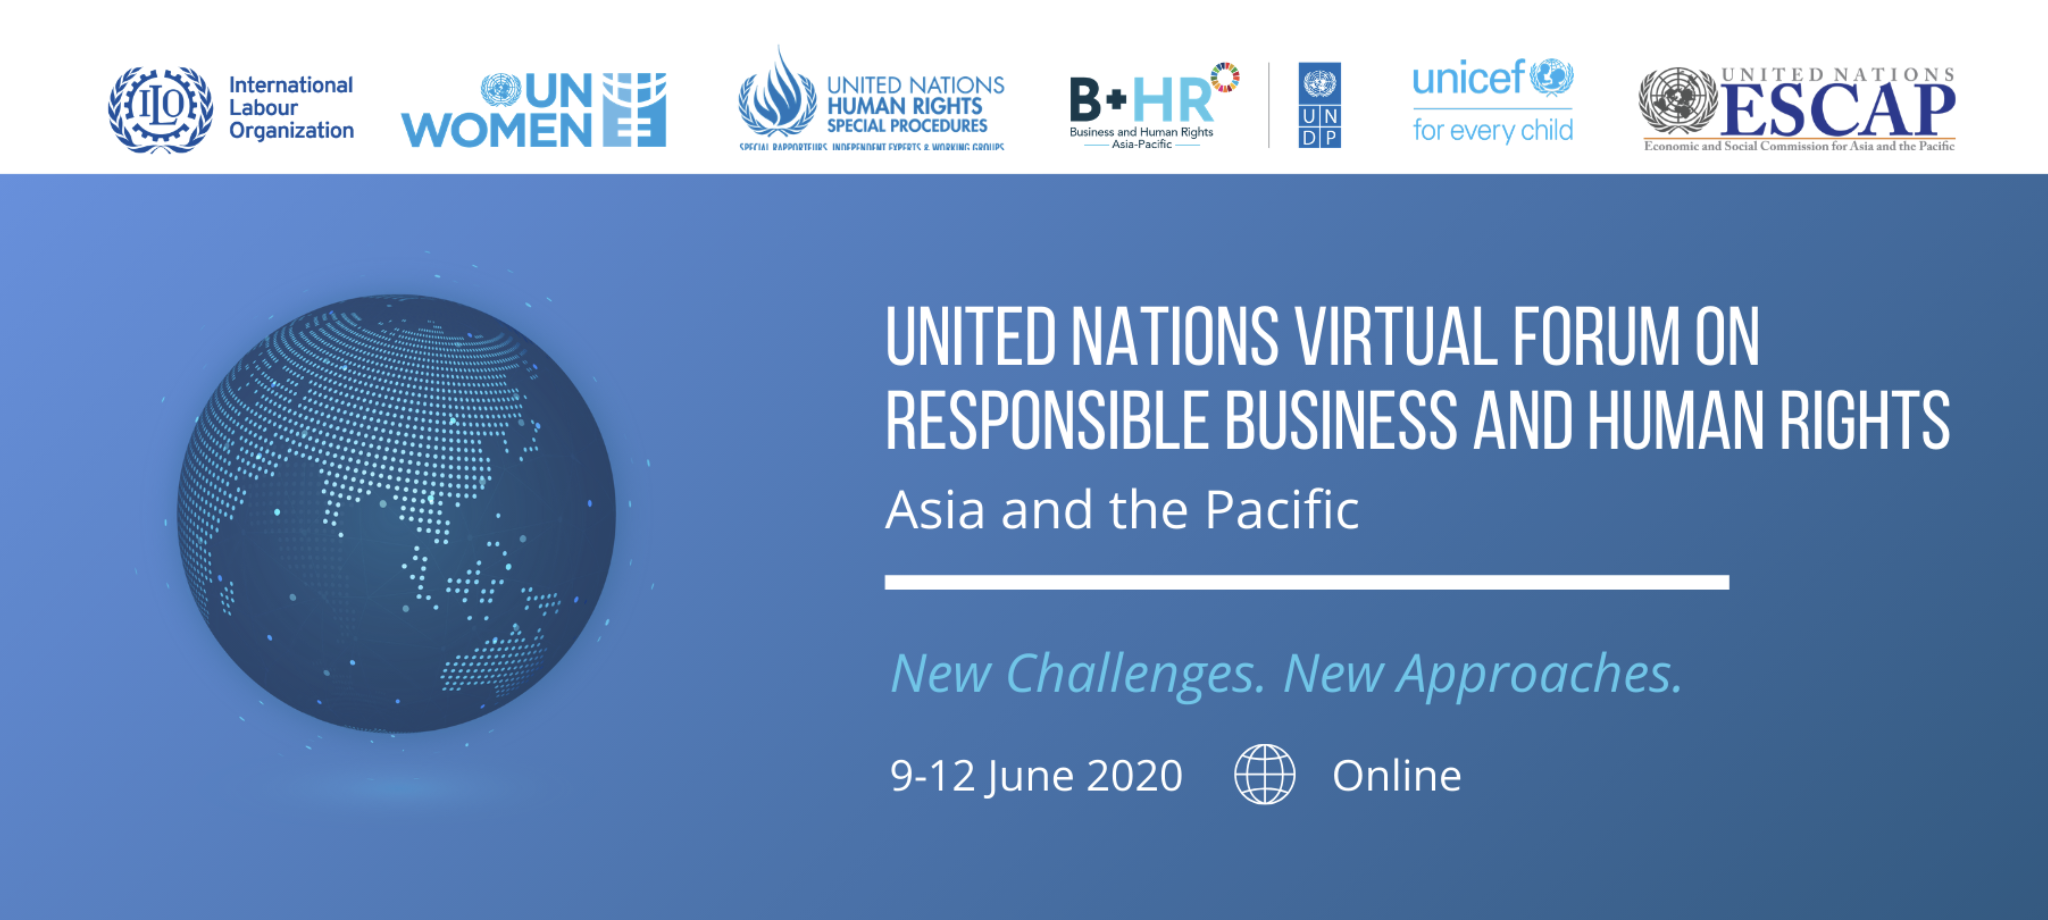 Foro Virtual de las Naciones Unidas sobre empresas responsables y los derechos humanos